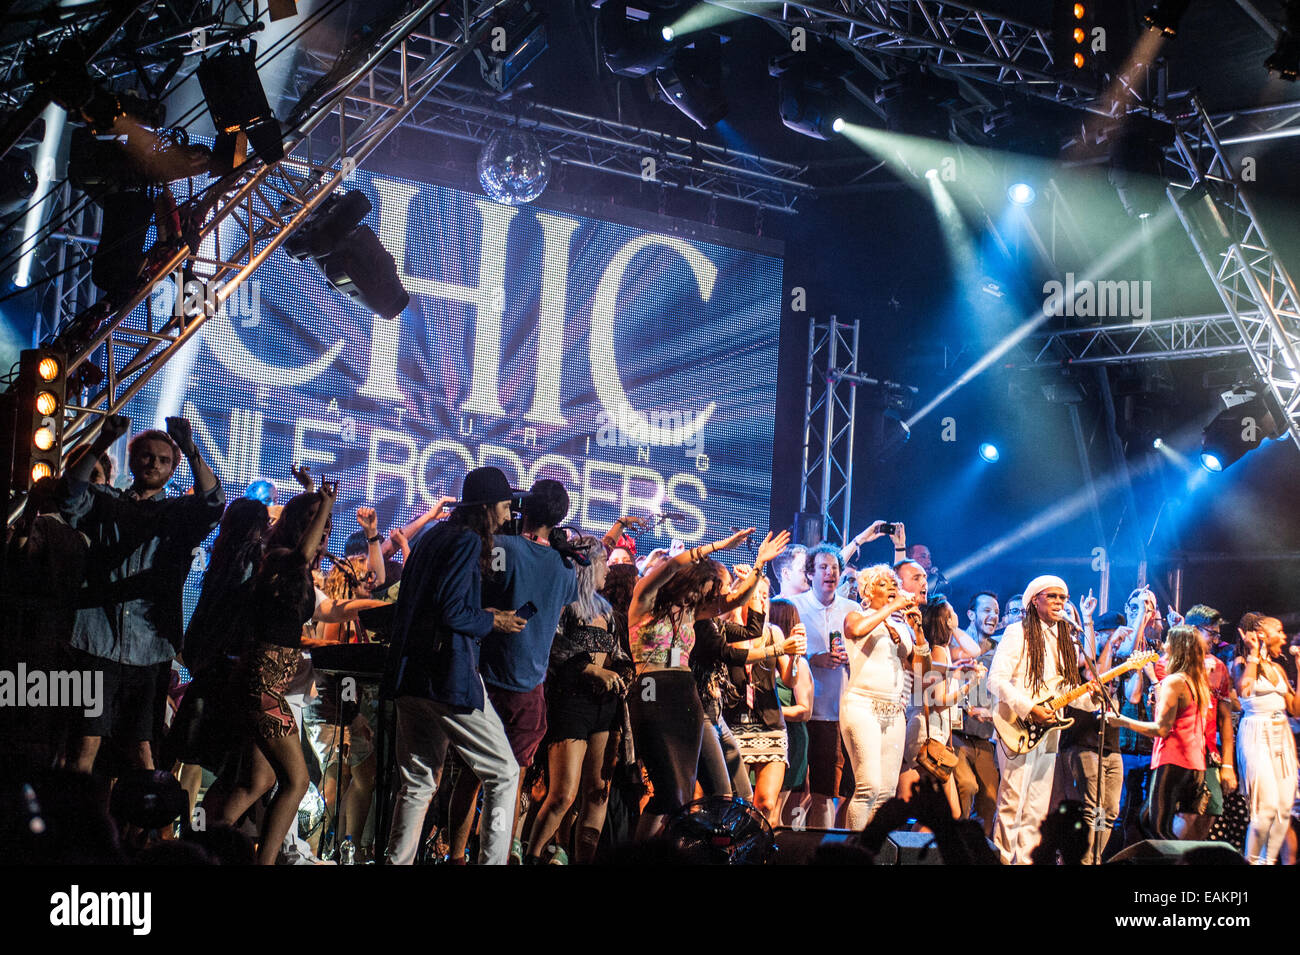 Eleganti dotate di Nile Rodgers concerto al festival sconosciuto, Rovigno, Croazia, 2014. CHIC feat Nile Rodgers am koncert im Kroatien. Foto Stock